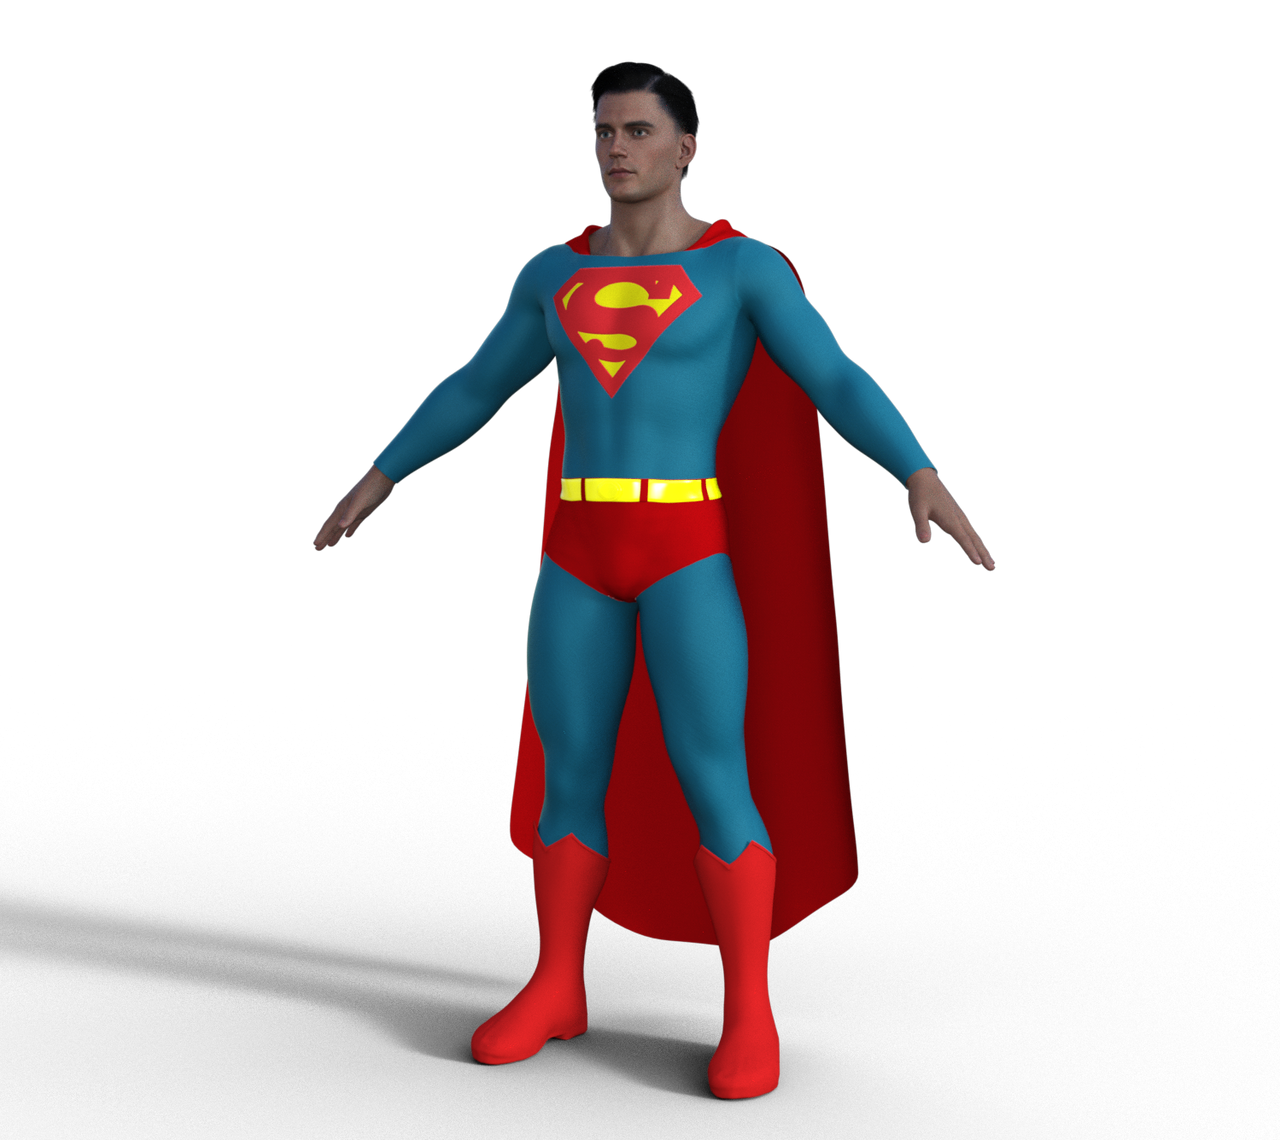 Superman Injustice 2 Henry Cavill by Gasa979 on DeviantArt